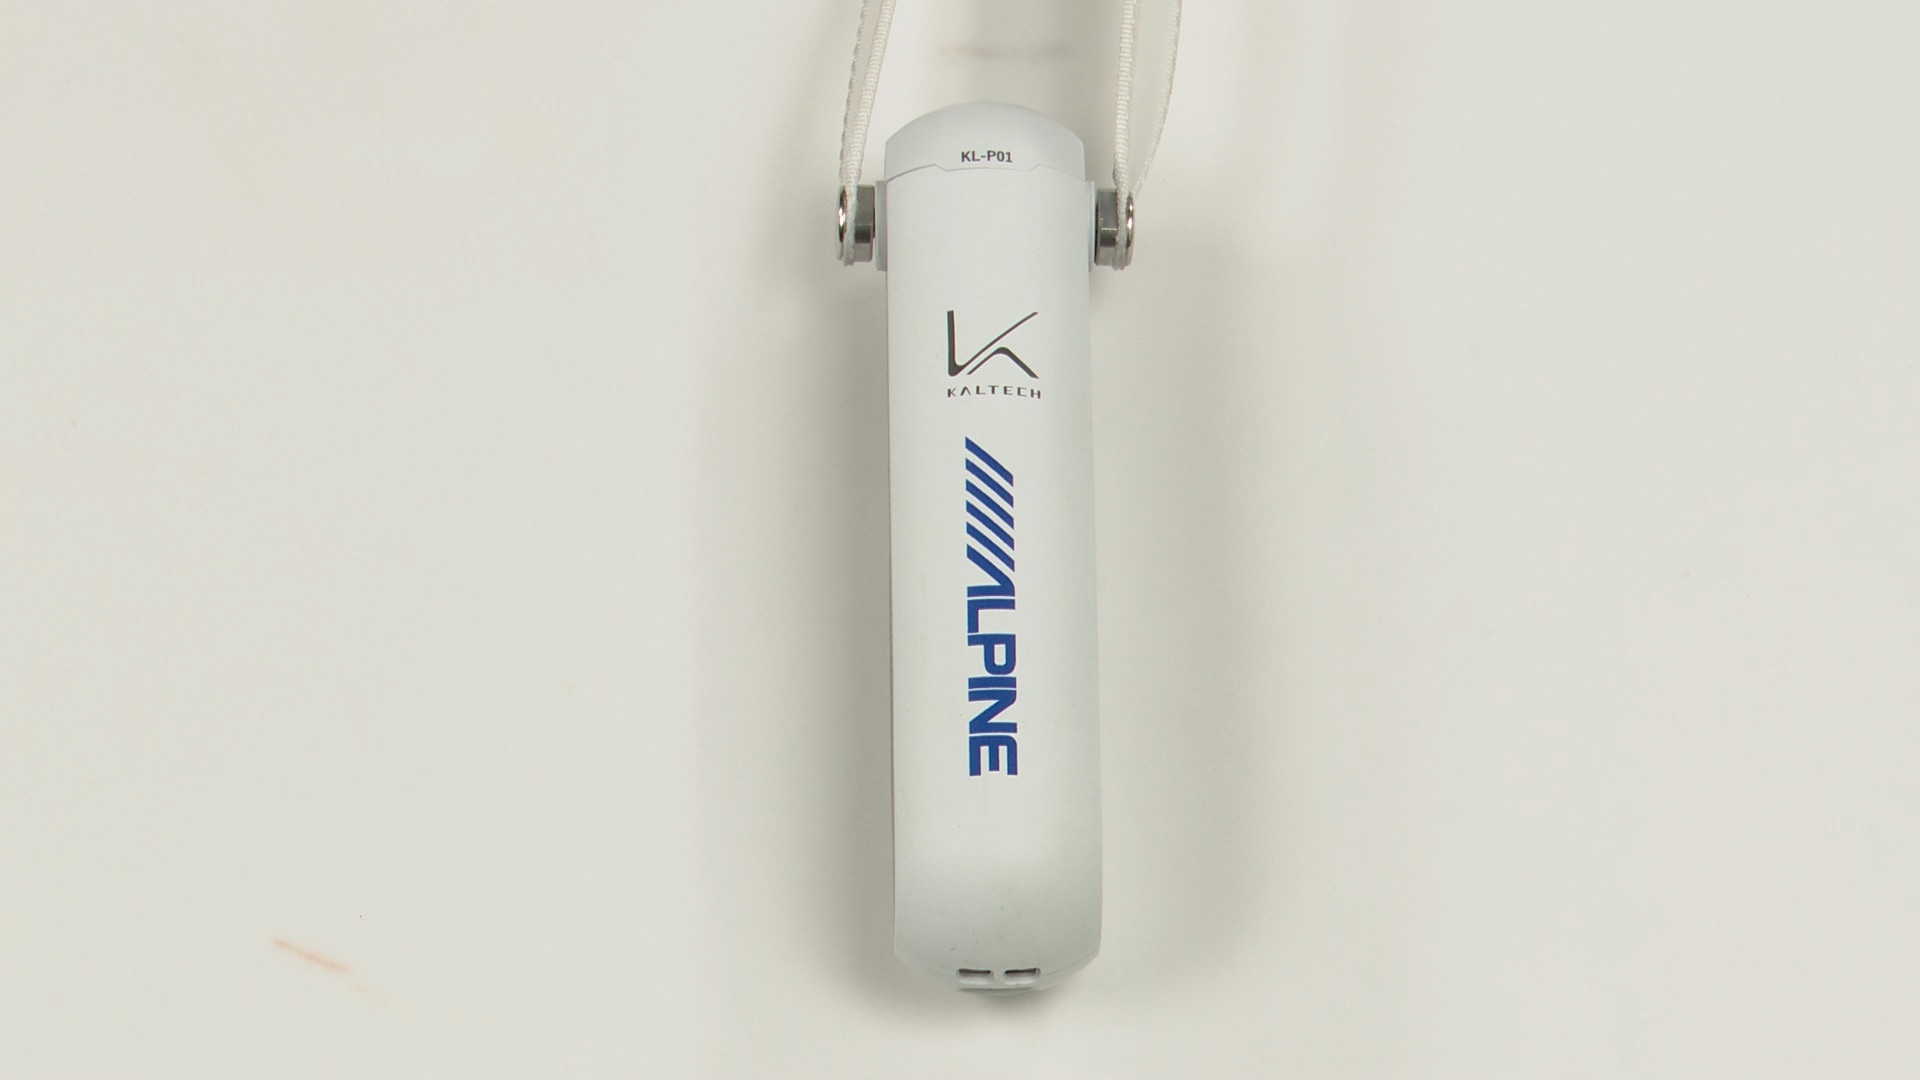 【全品半額】カルテック 光触媒 除菌・脱臭機 KL-P01 空気清浄器